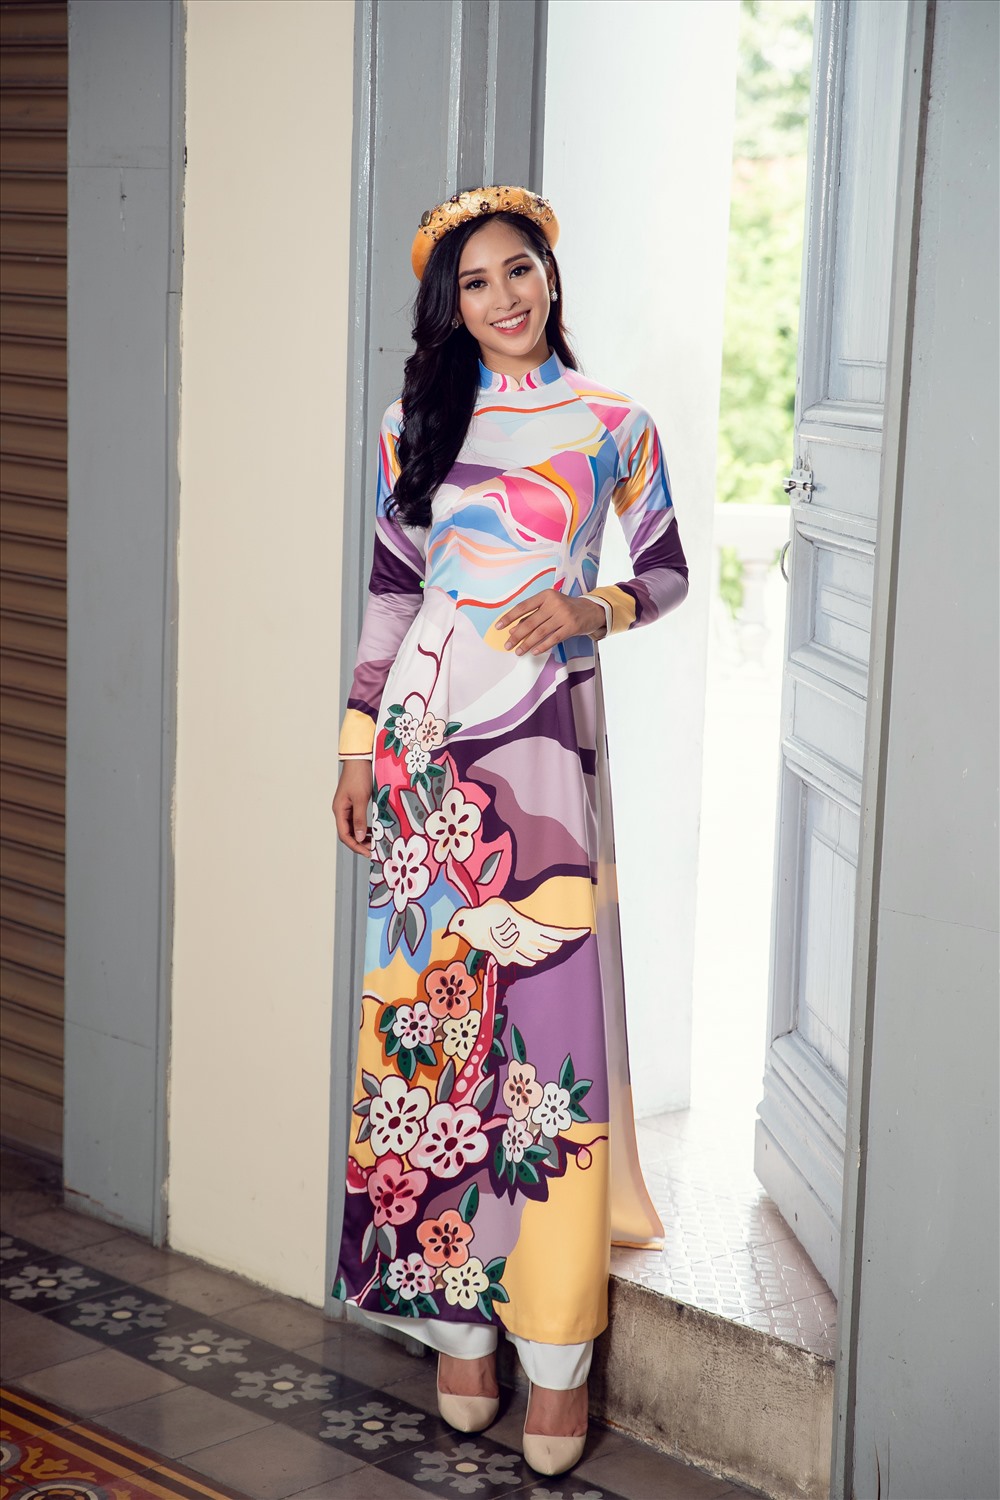 Kể từ sau khi trở về từ Miss World 2018, Hoa hậu Tiểu Vy ngày càng được đánh giá cao nhan sắc và thần thái ngày càng chuyên nghiệp. 